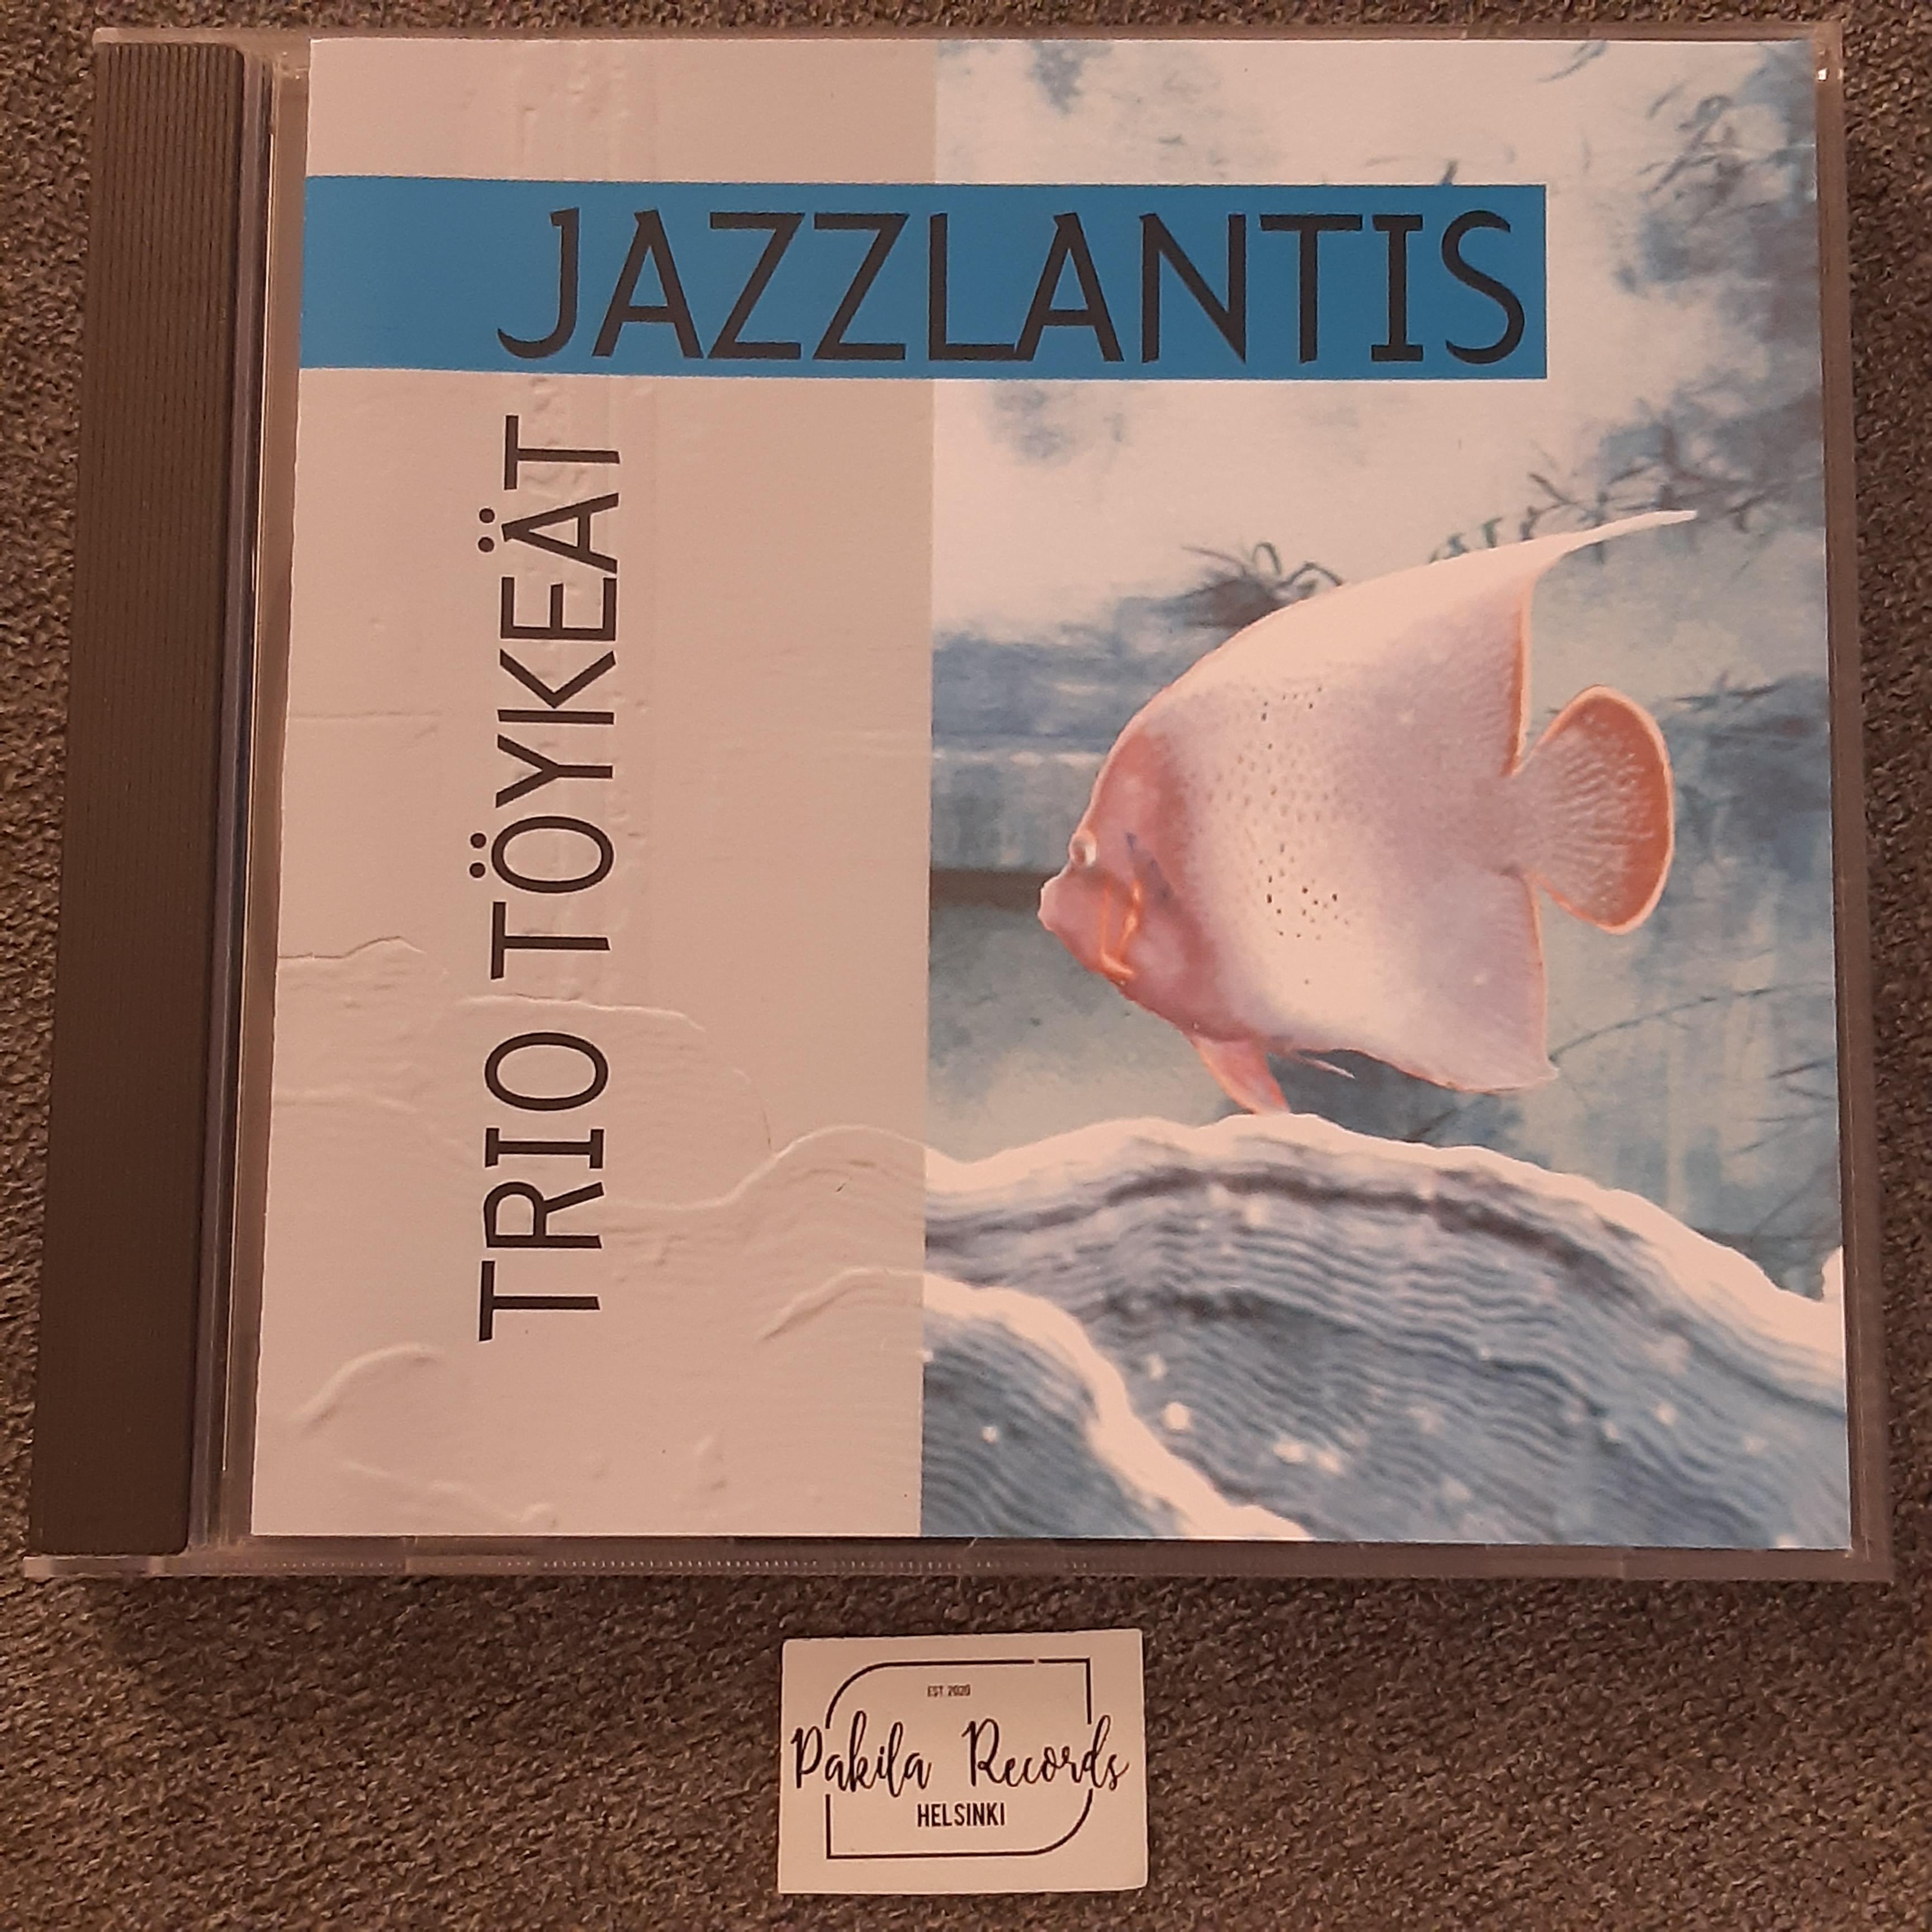 Trio Töykeät - Jazzlantis - CD (käytetty)